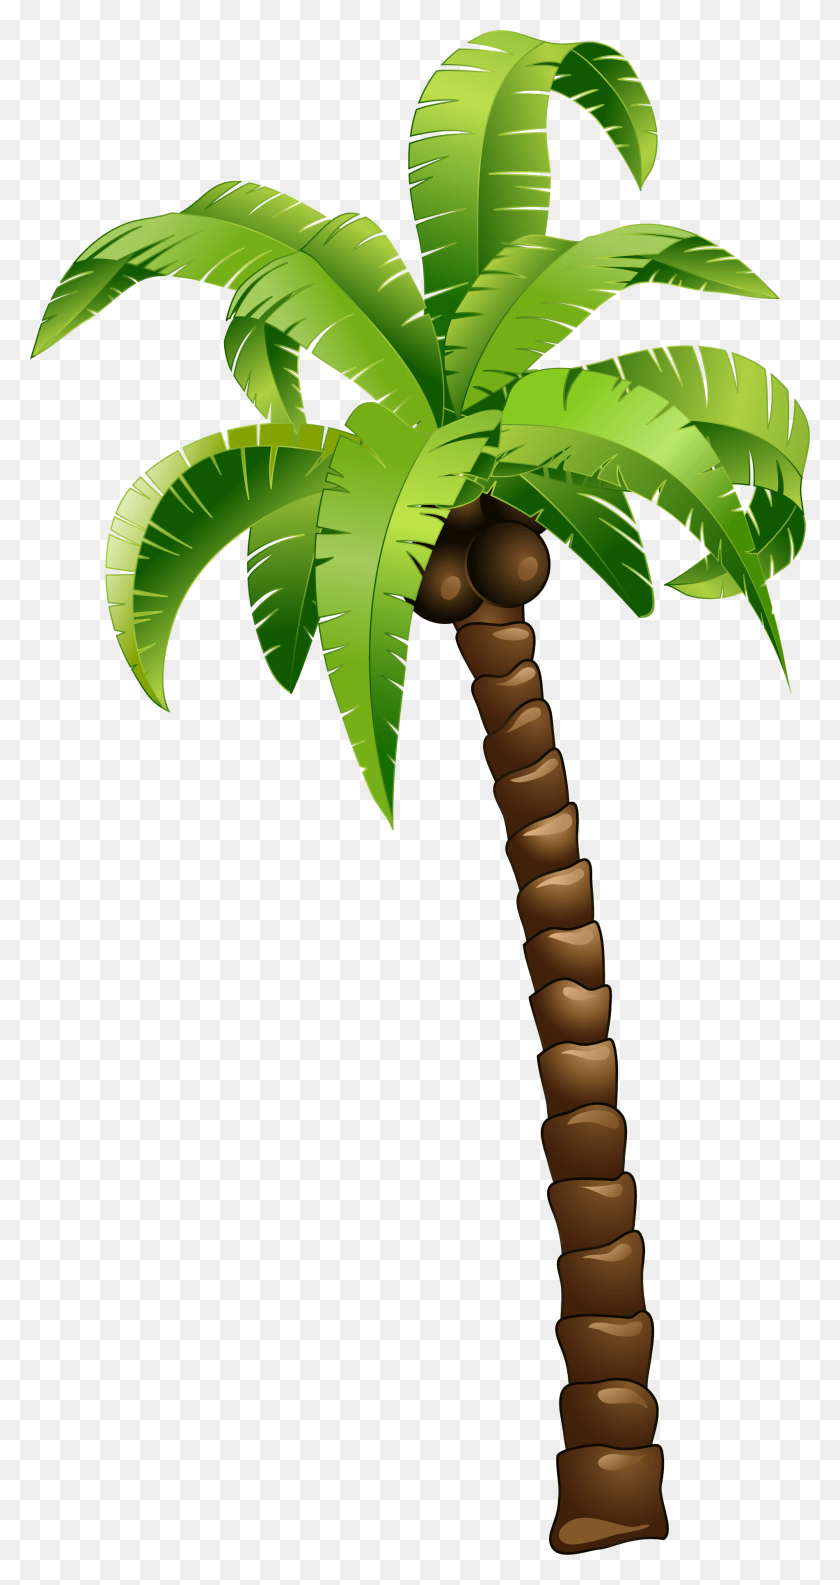 1901x3718 Descargar Png Árbol De Coco Verde De Dibujos Animados Árbol De Coco, Planta, Palmera Hd Png